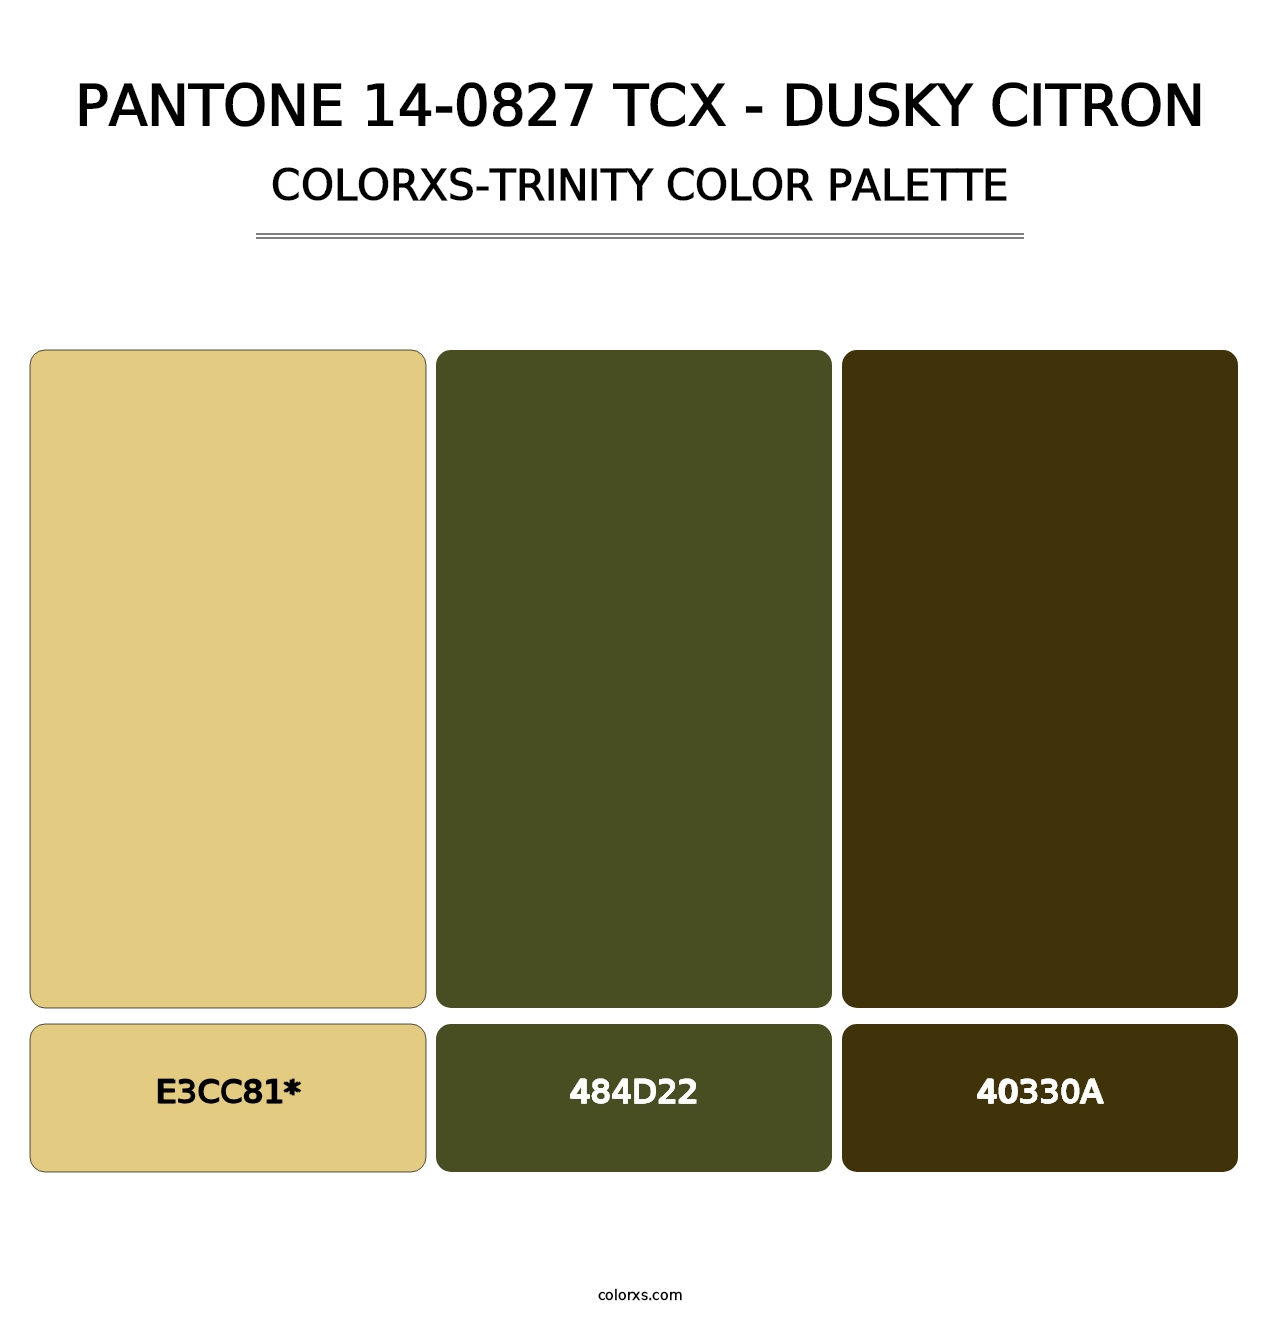 PANTONE 14-0827 TCX - Dusky Citron - Colorxs Trinity Palette